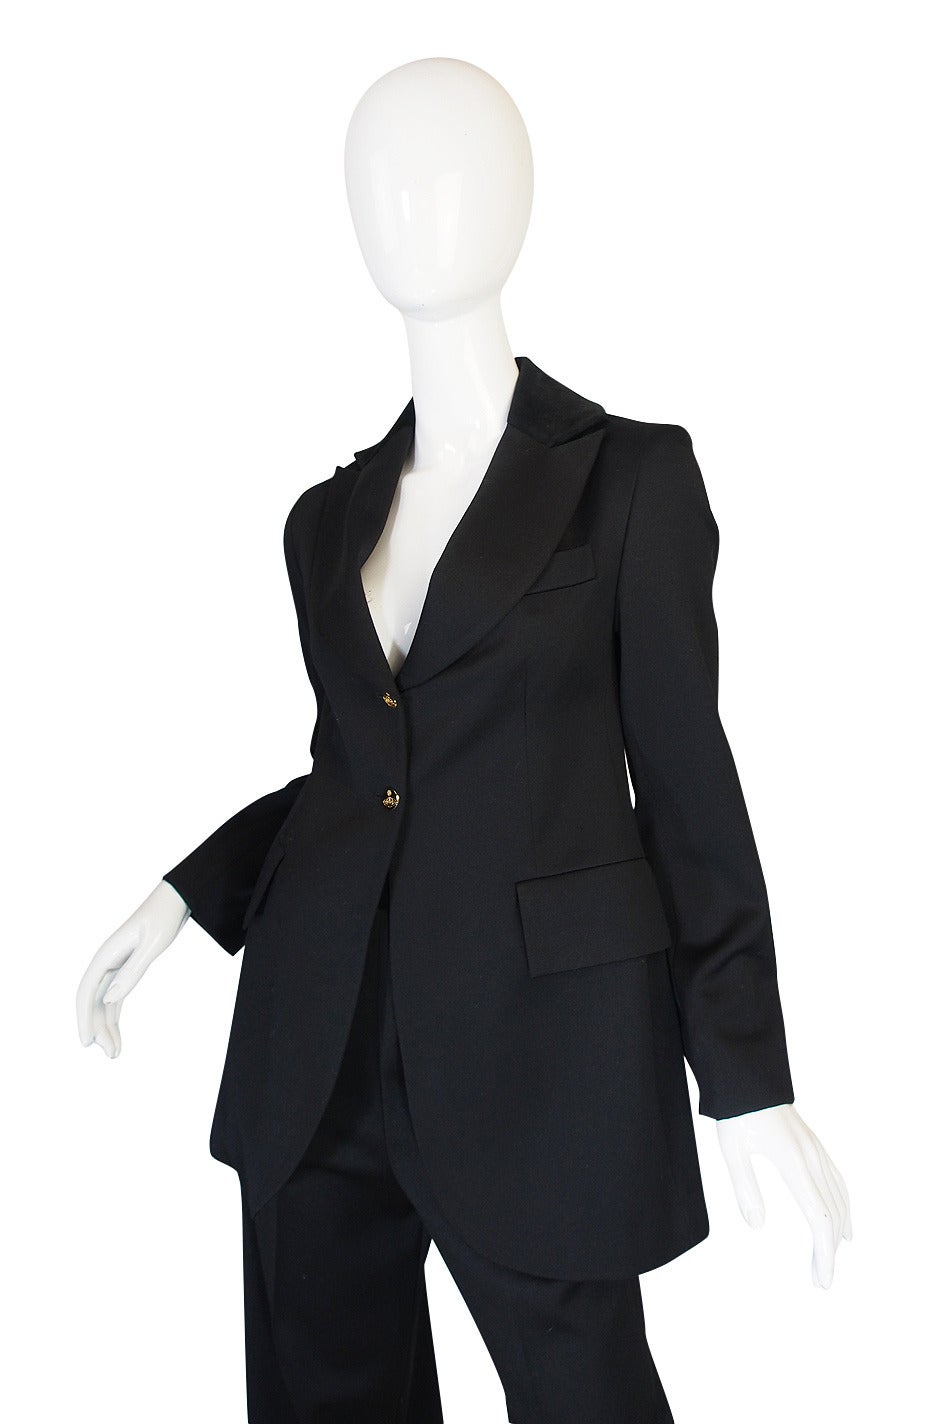 Rare 1990s Vivienne Westwood Black Tuxedo Suit 1